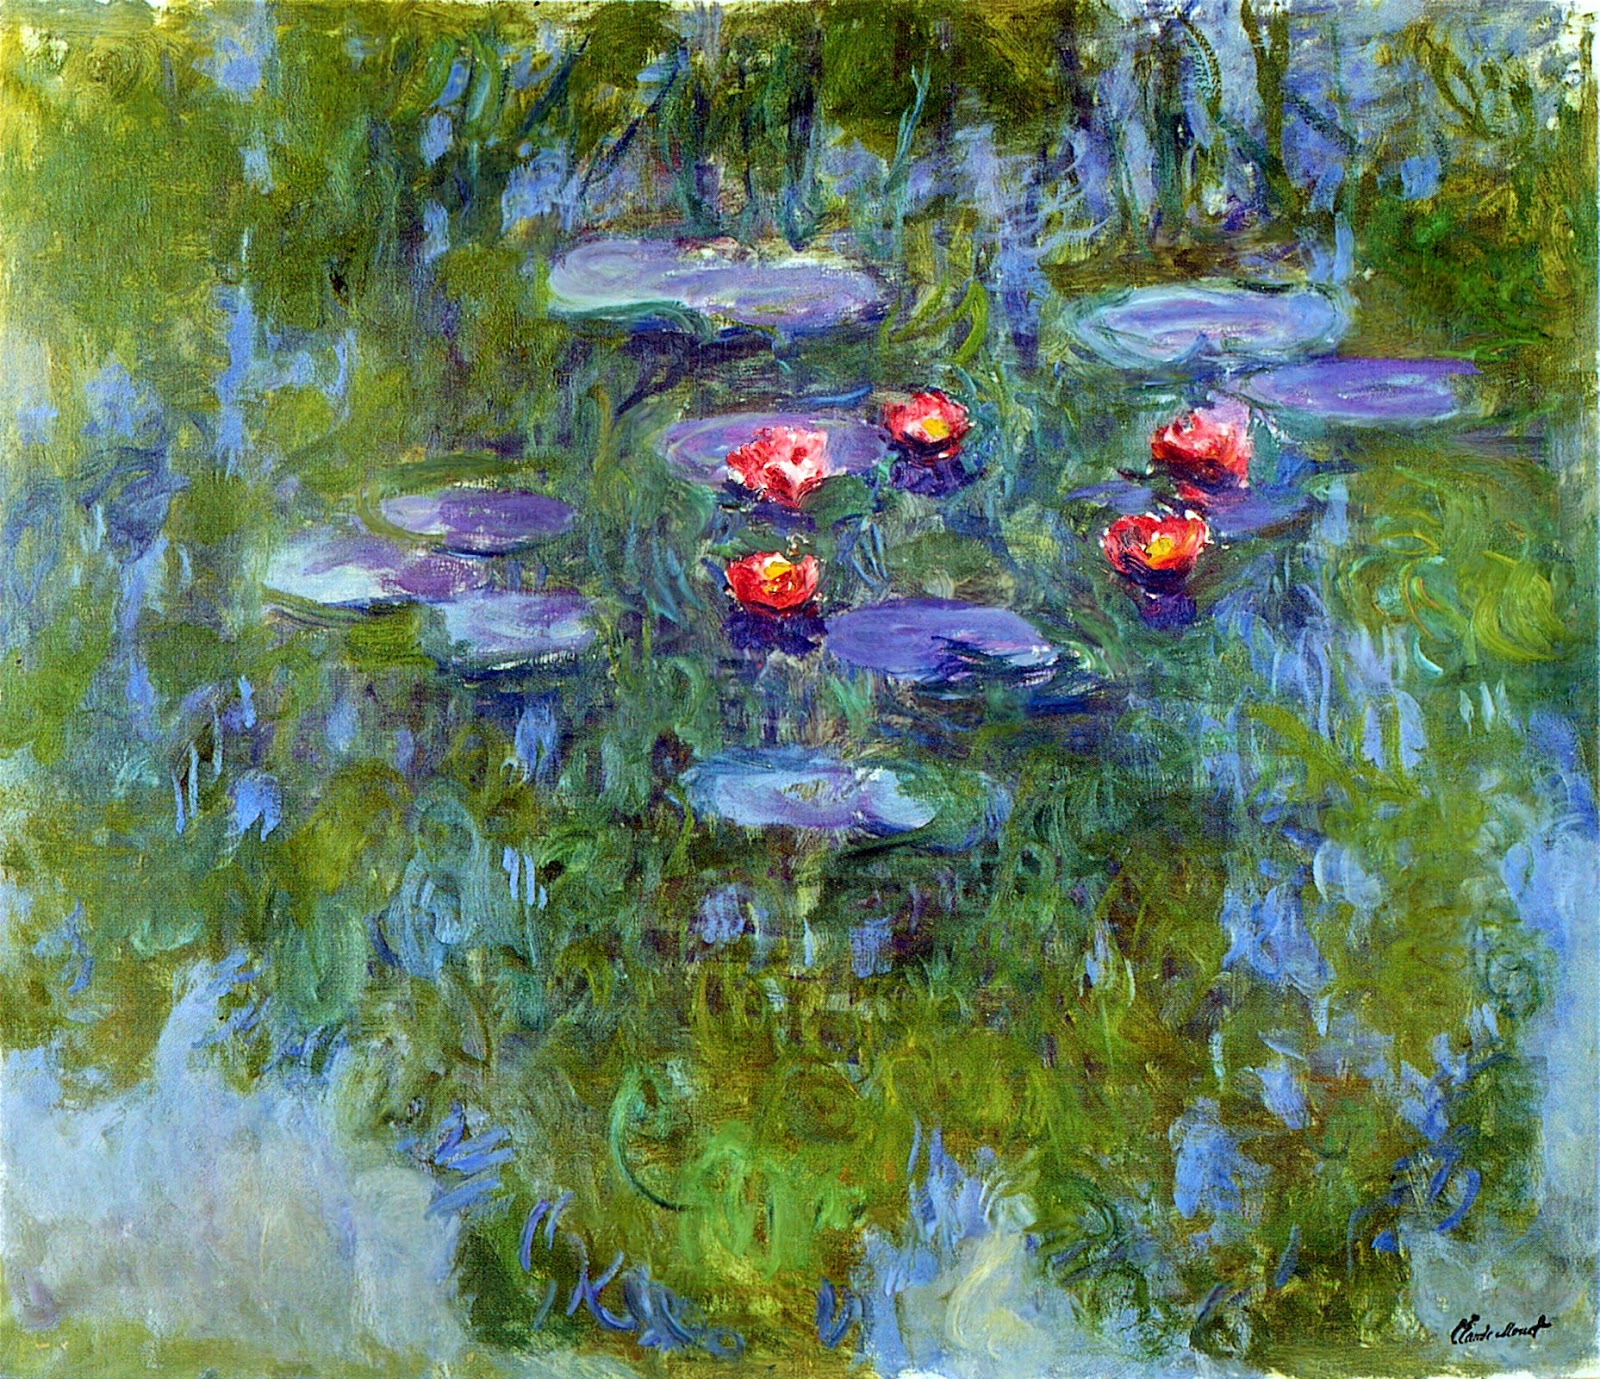 Quadros De Claude Monet - MODISEDU